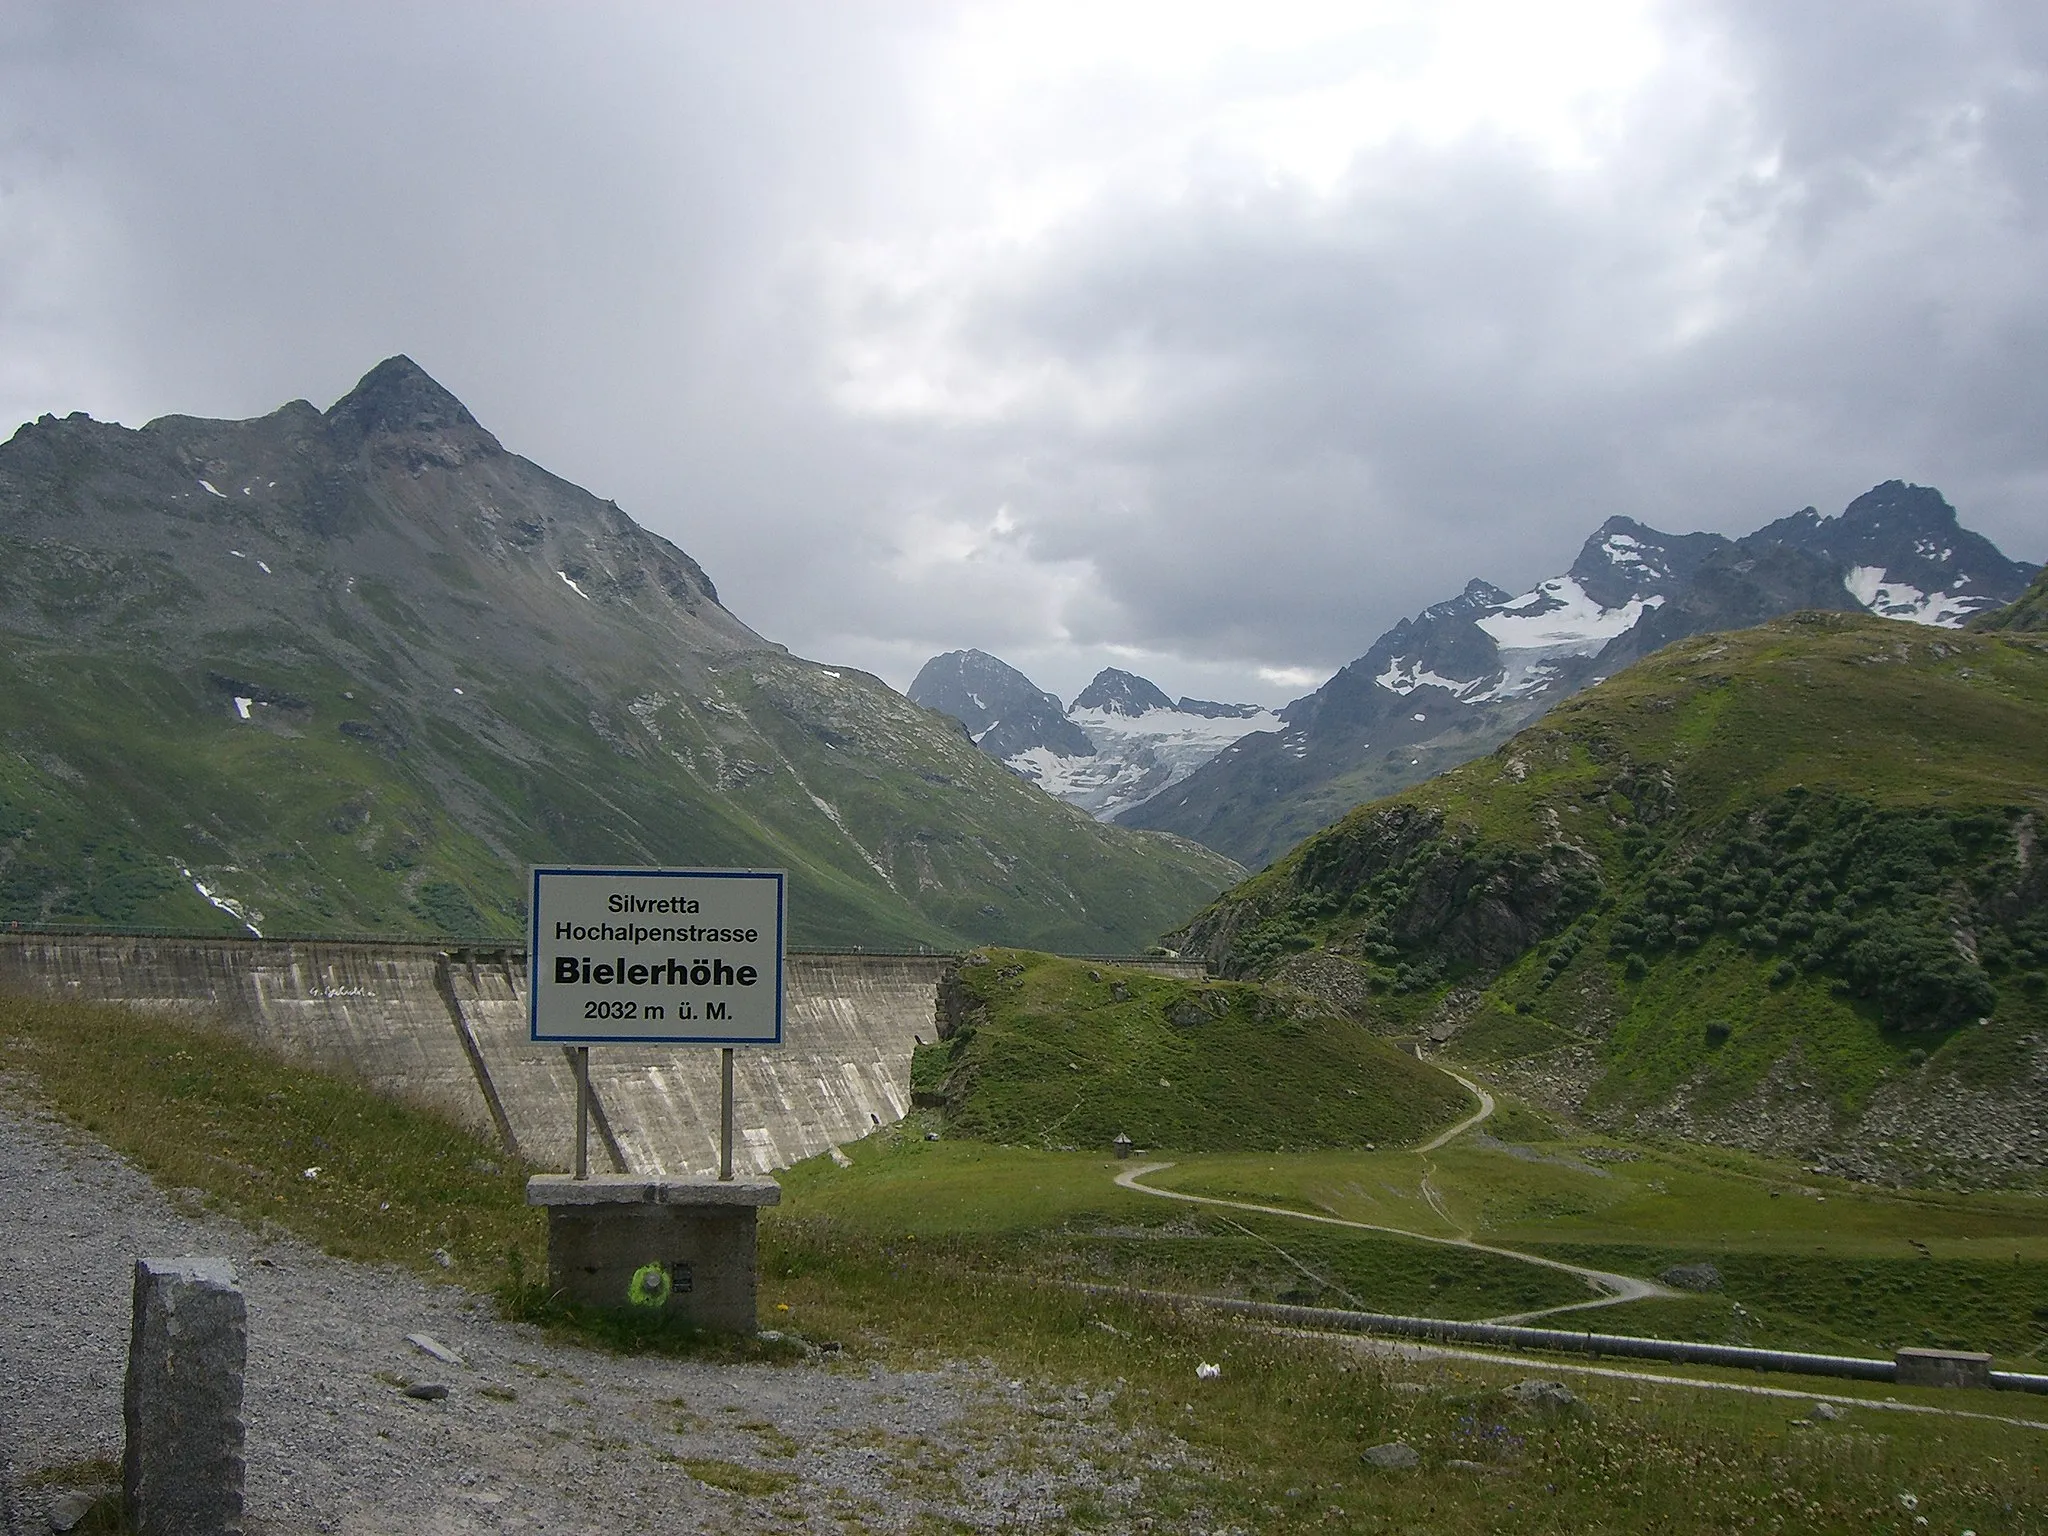 Photo showing: Bielerhöhe sign: "Silvretta Hochalpenstraße, Bielerhöhe, 2032 m ü. M." coming from west